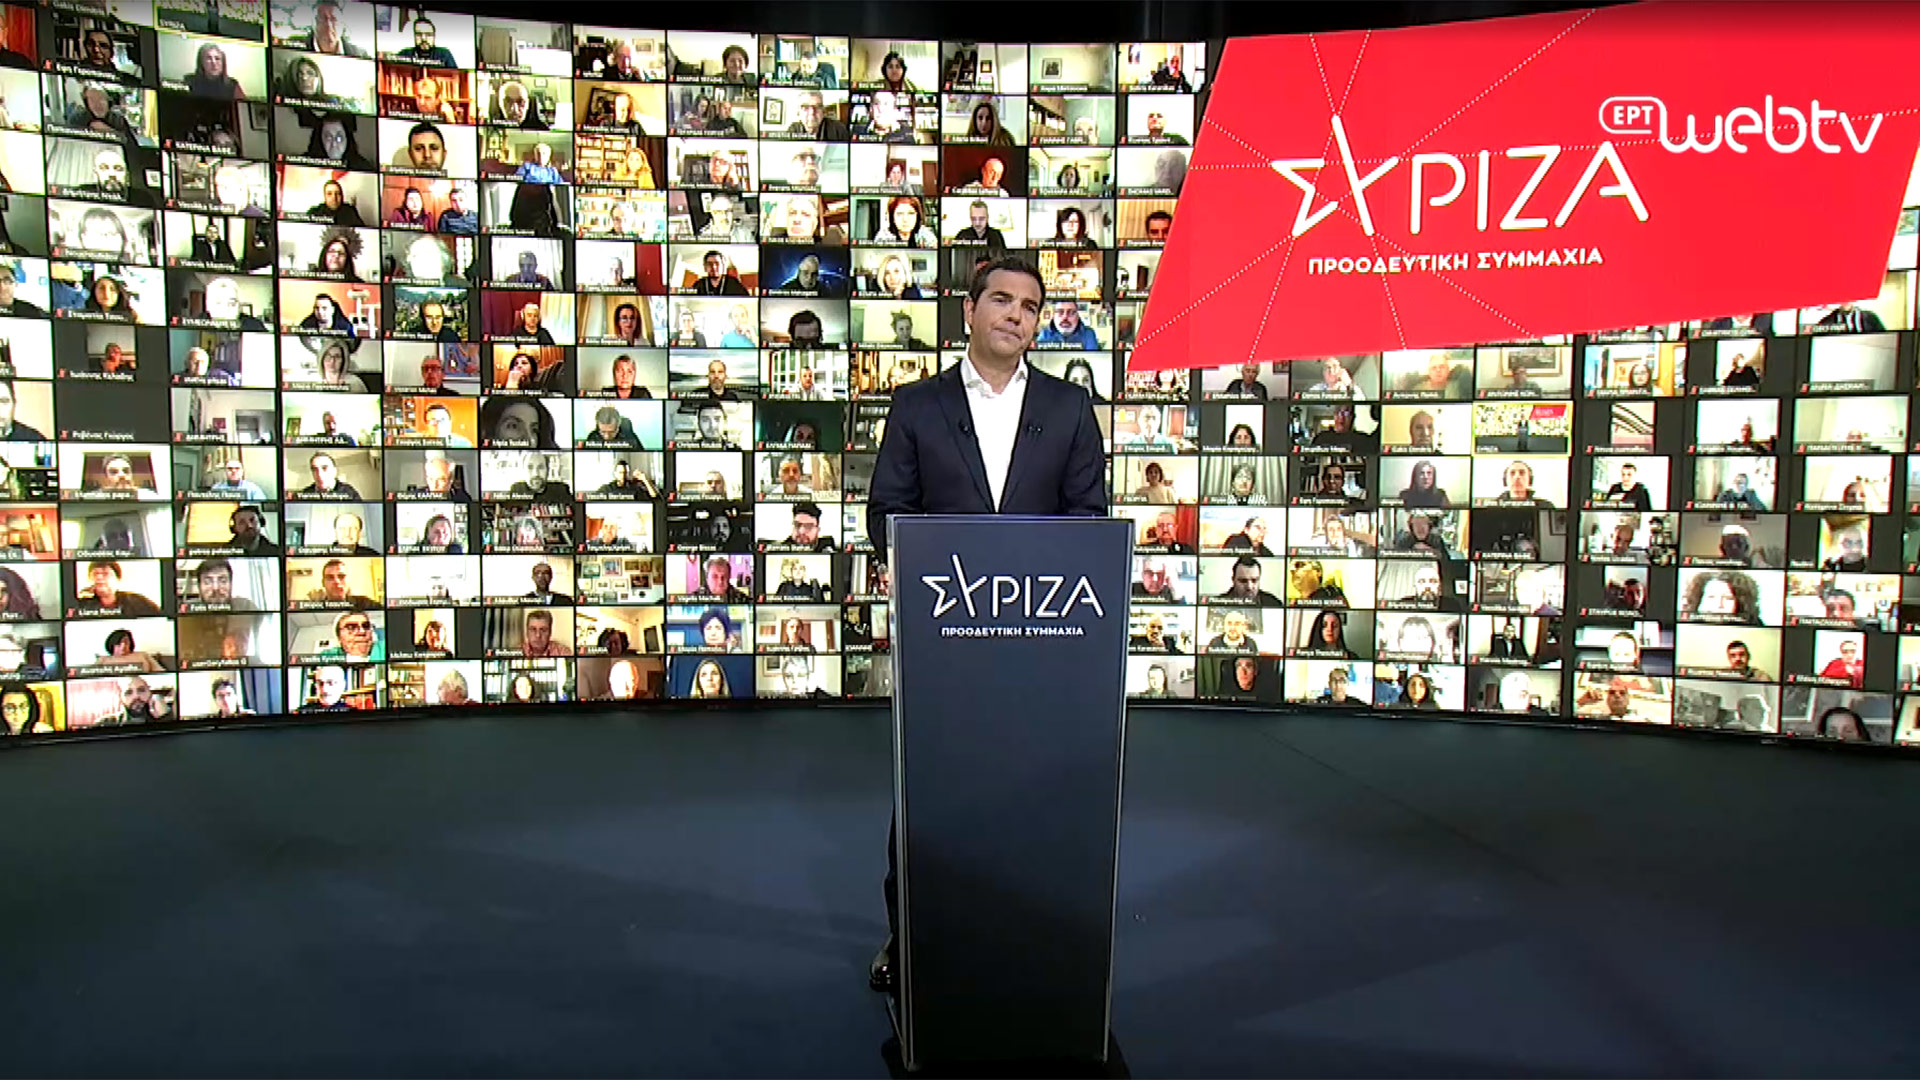 ΣΥΡΙΖΑ: Αναλυτικά το πρόγραμμα που παρουσίασε ο Α.Τσίπρας (βίντεο)